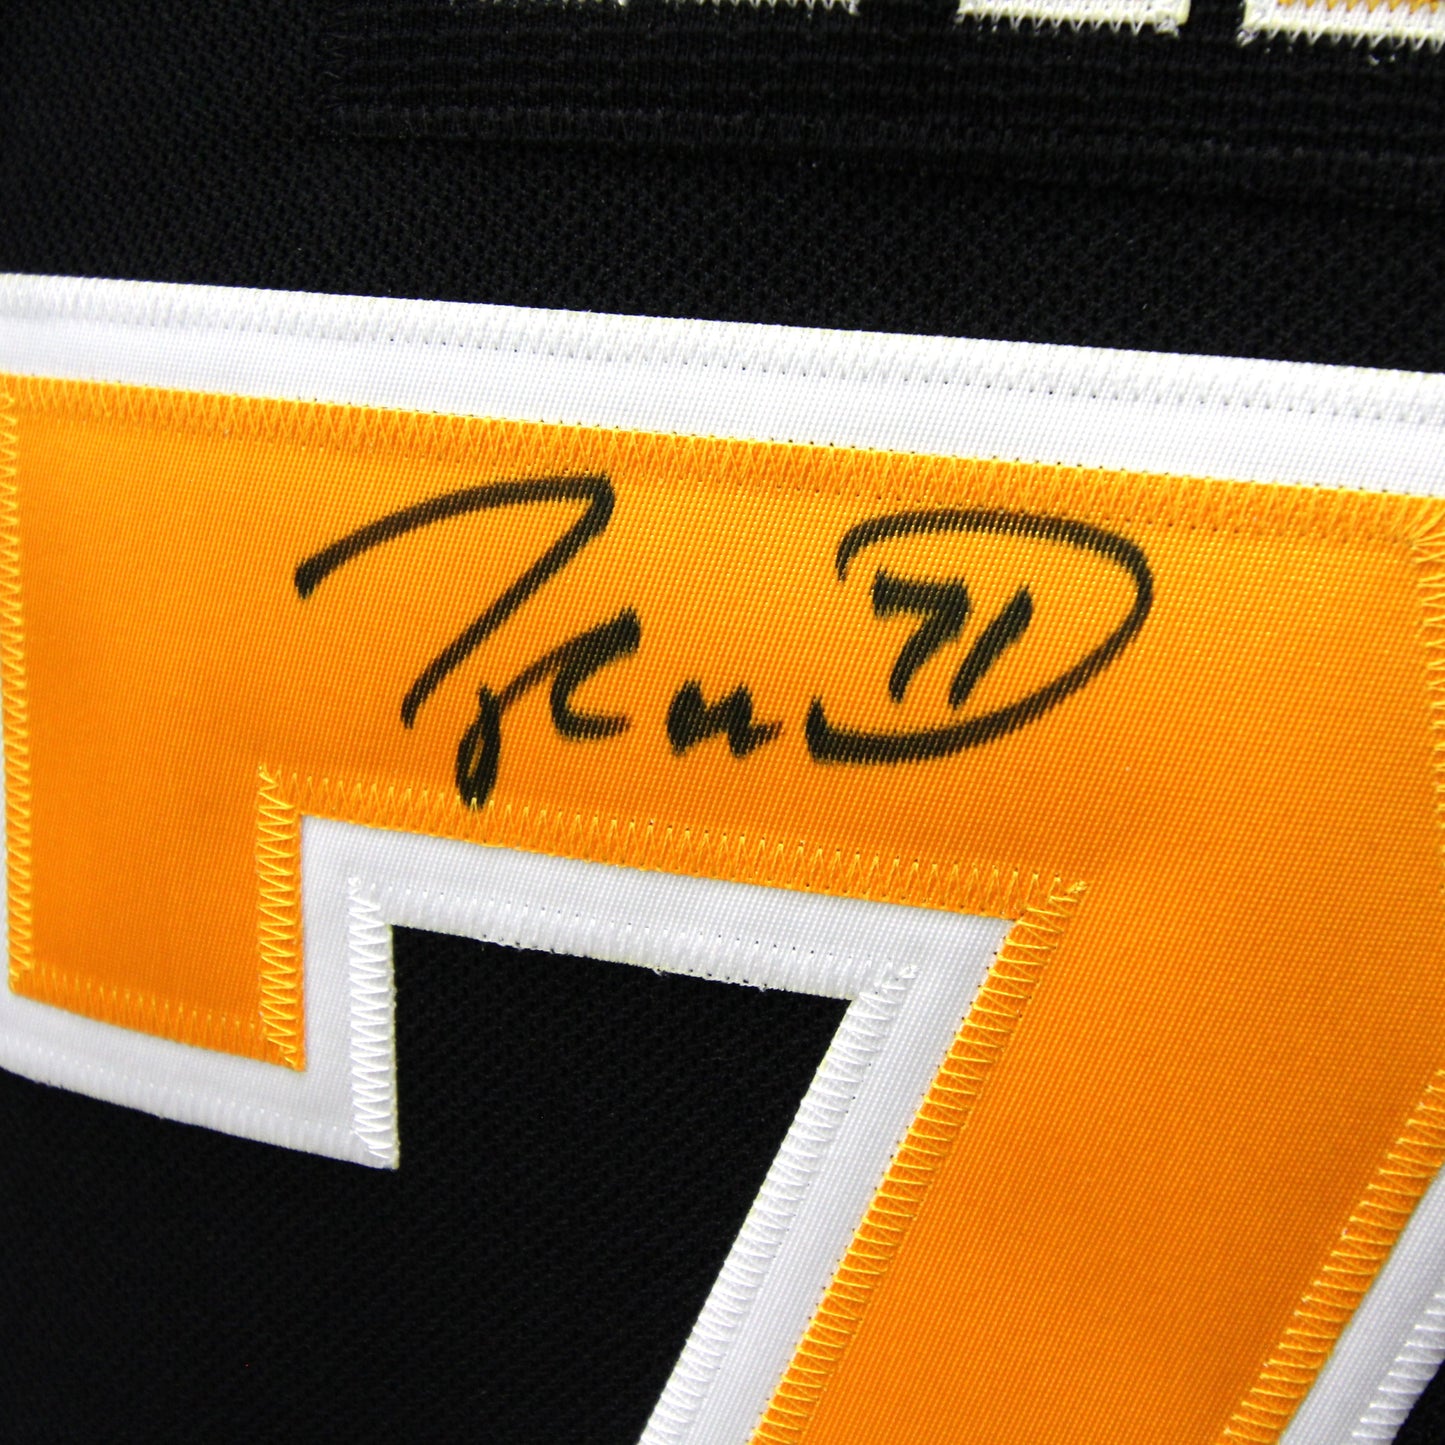 Taylor Hall - Bruins - Autographed Jersey / Chandail autographié